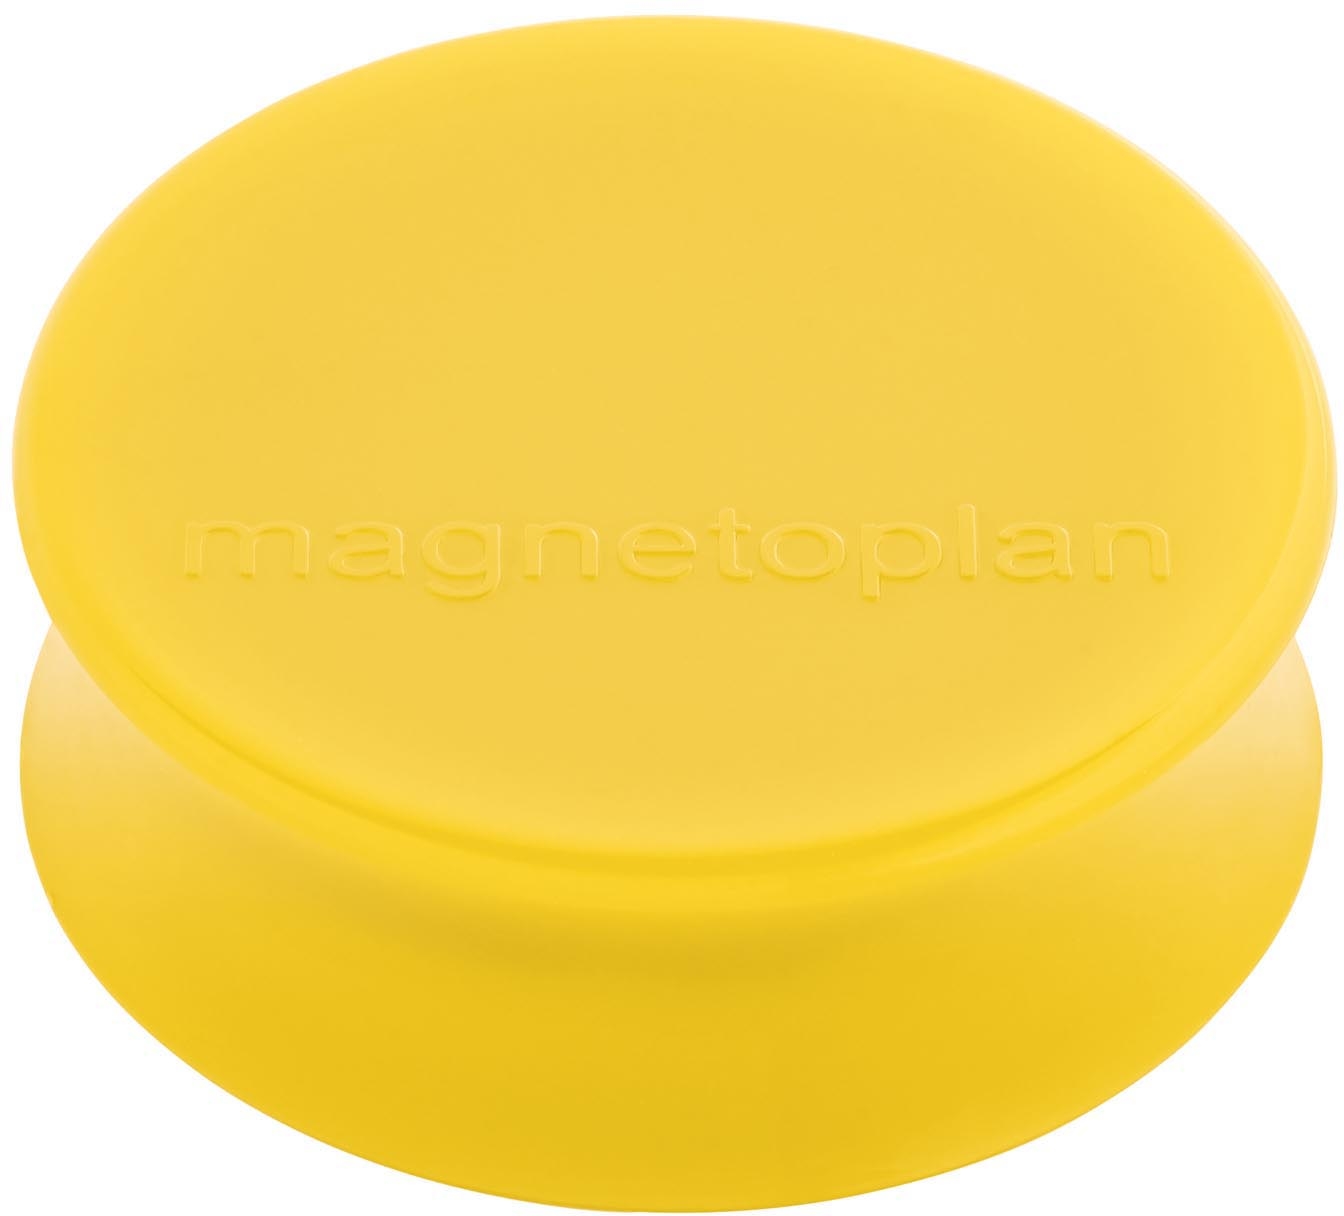 MAGNETOPLAN Aimant Ergo Large 10pcs. 16650102 jaune doré 34x17.5mm